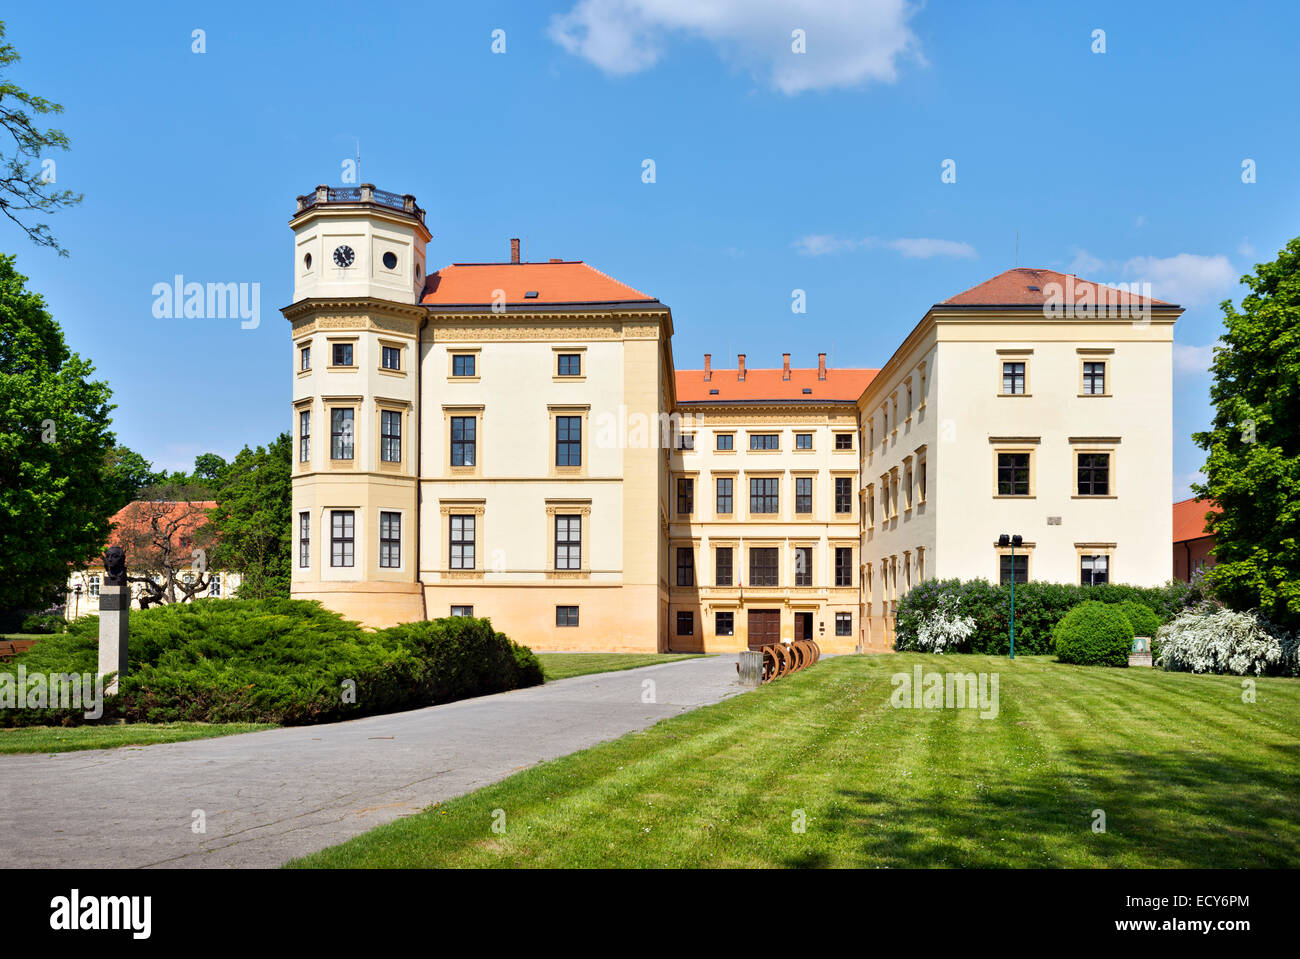 Strážnice Castle, Straznice, Hodonin district, Jihomoravsky county, Czech Republic Stock Photo